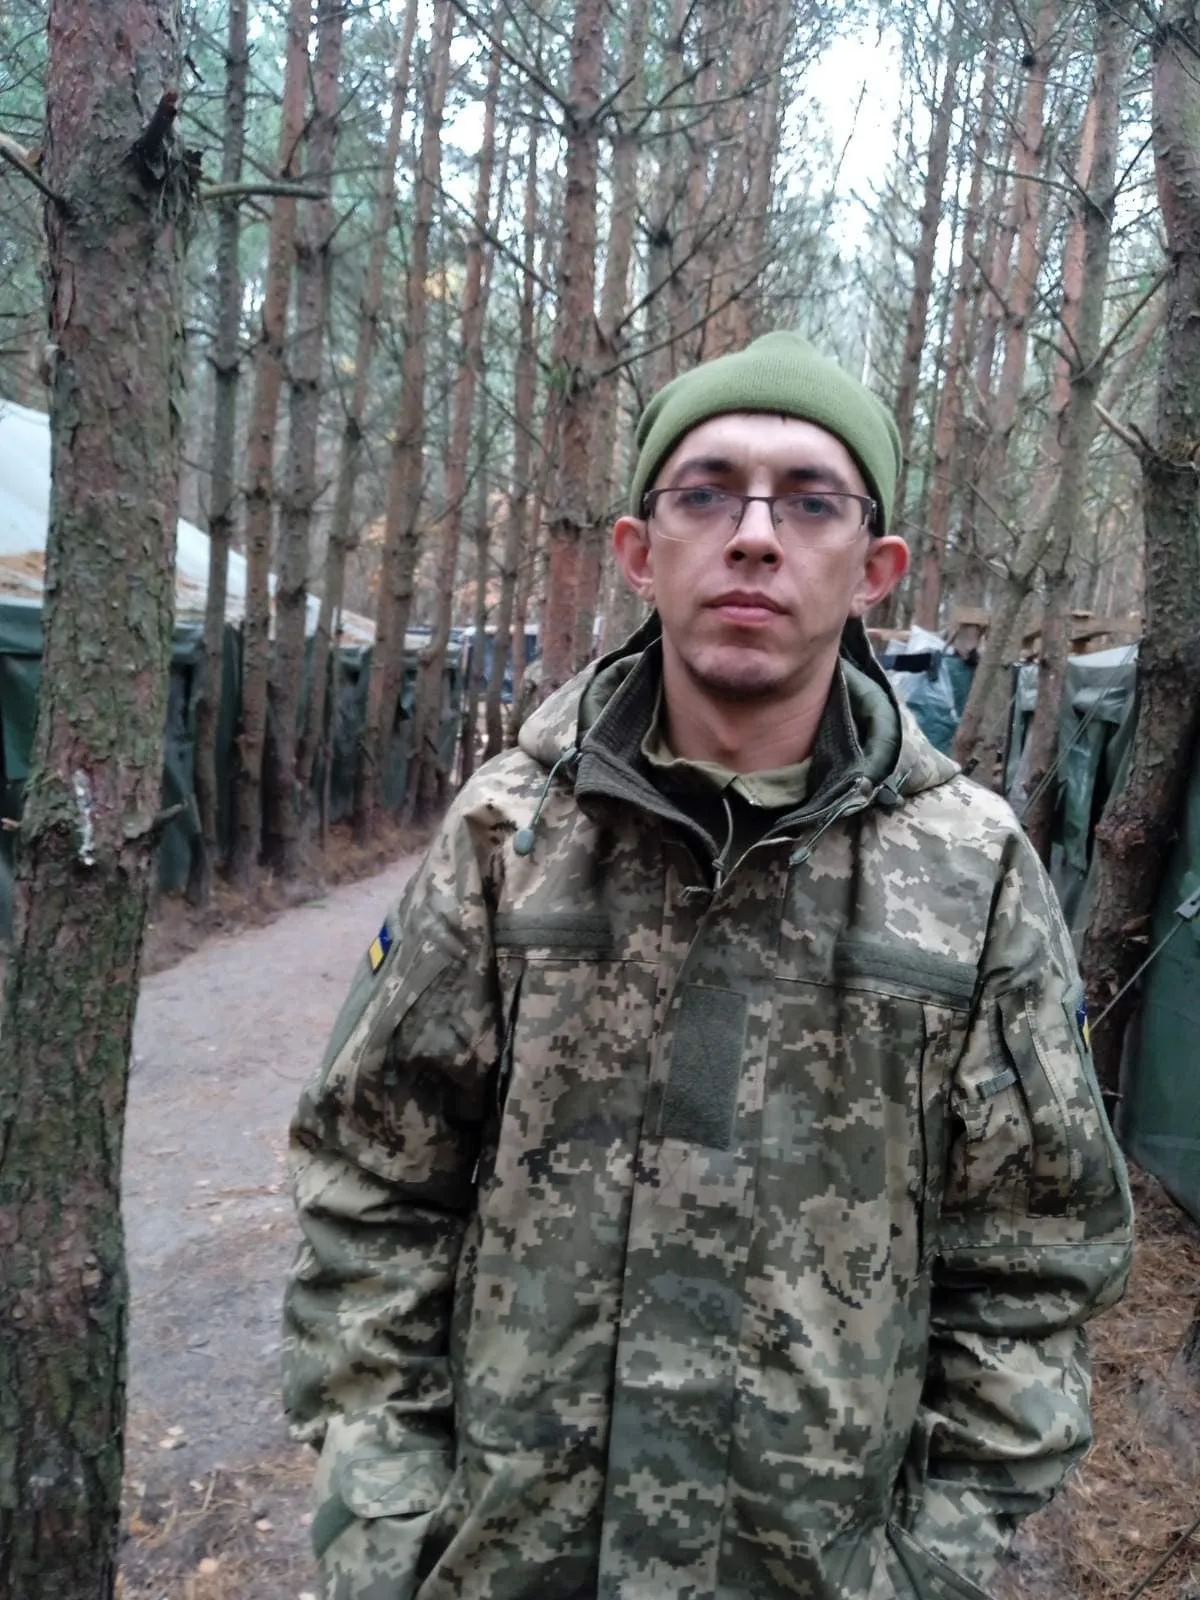 Отдал жизнь за Украину: в боях в Донецкой области погиб молодой защитник с Закарпатья. Фото